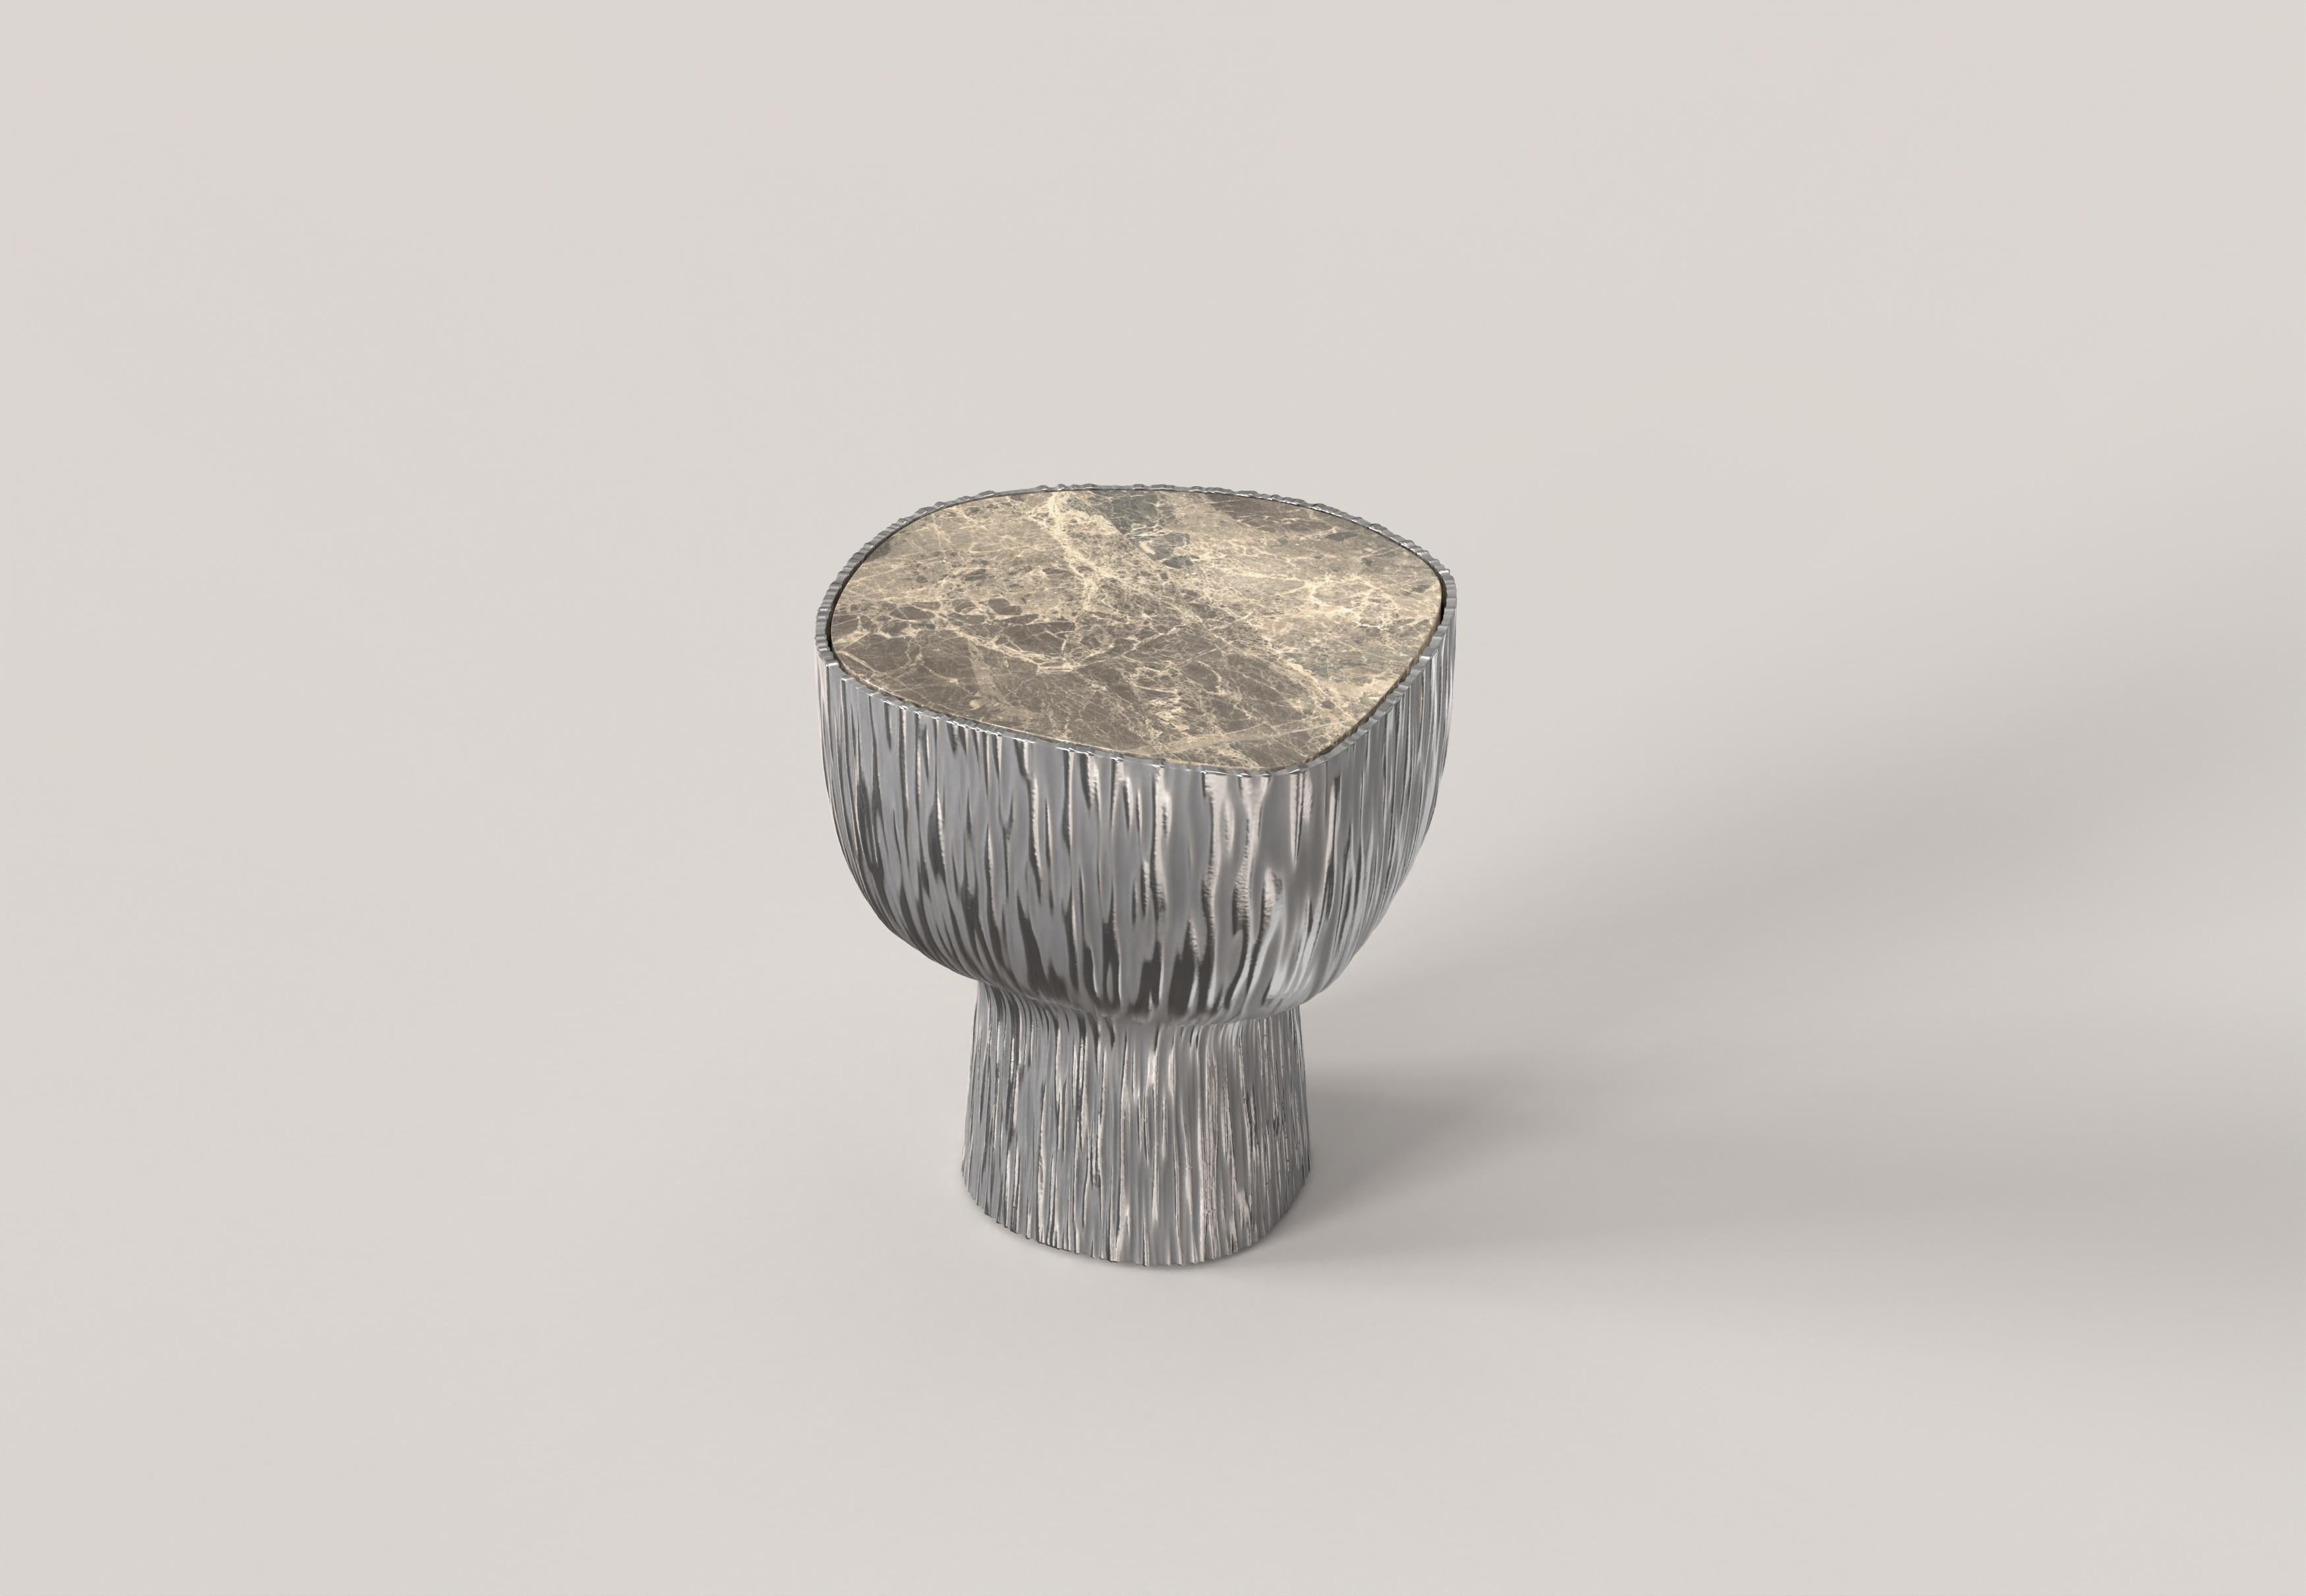 Giava V1 ist ein Beistelltisch des 21. Jahrhunderts aus Aluminiumguss mit einer außergewöhnlichen Marmorplatte aus Breccia Paradiso. Der Aluminiumguss zeichnet sich durch eine skulpturale Oberfläche mit einer Riffelung aus, die ihm eine